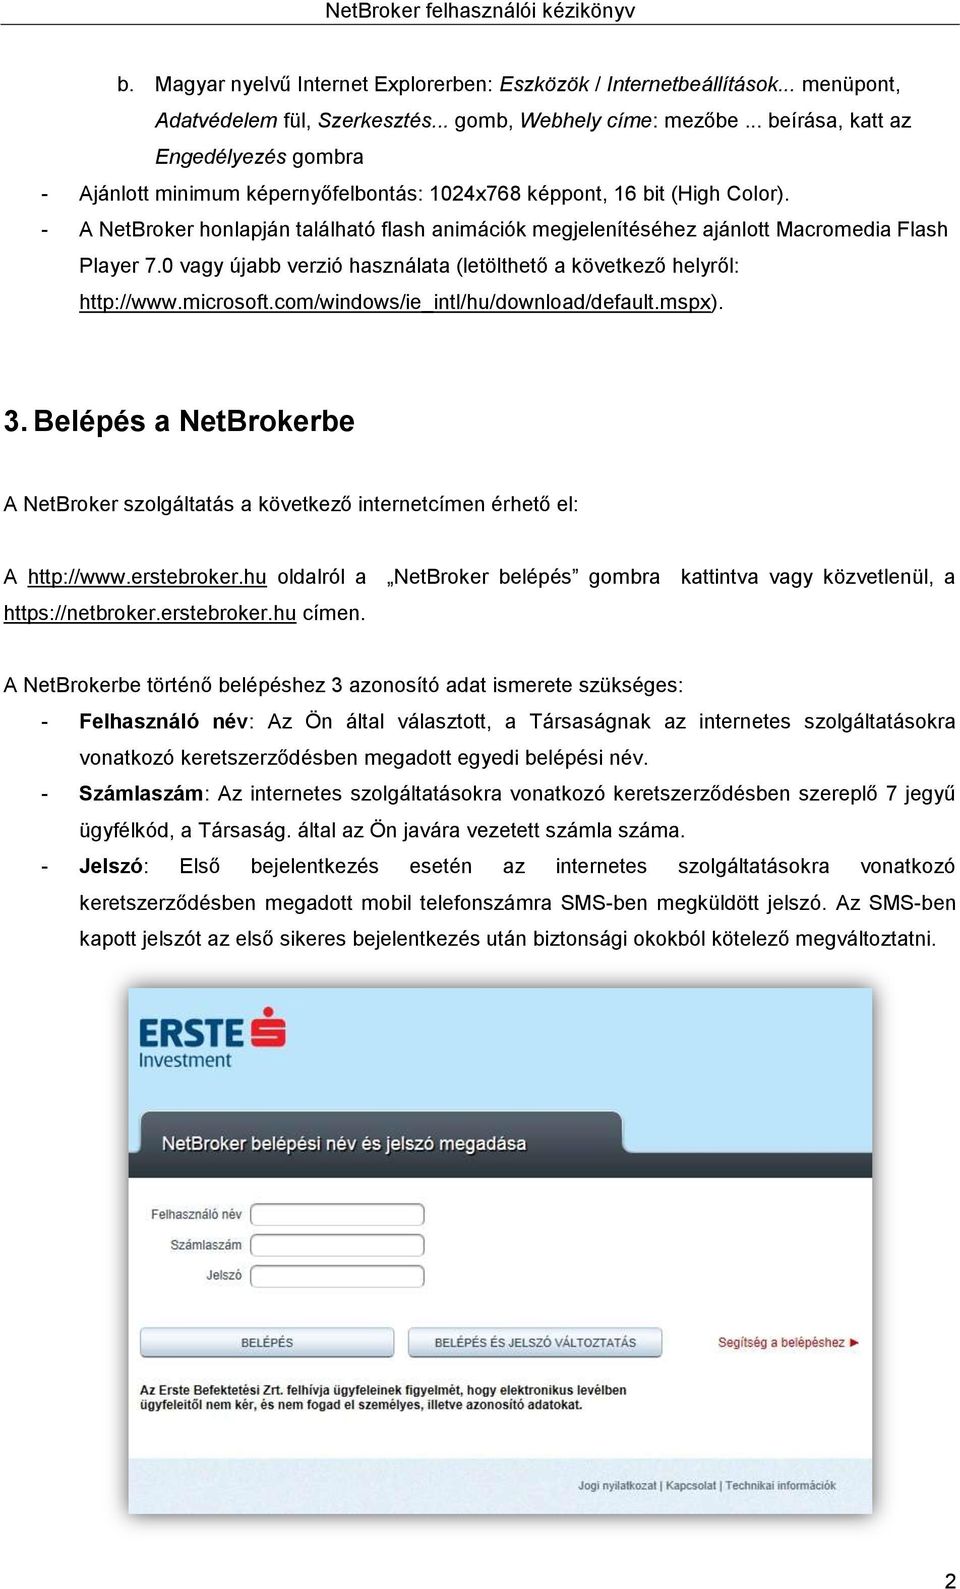 NetBroker. Felhasználói kézikönyv. Erste Befektetési Zrt. - PDF Free  Download